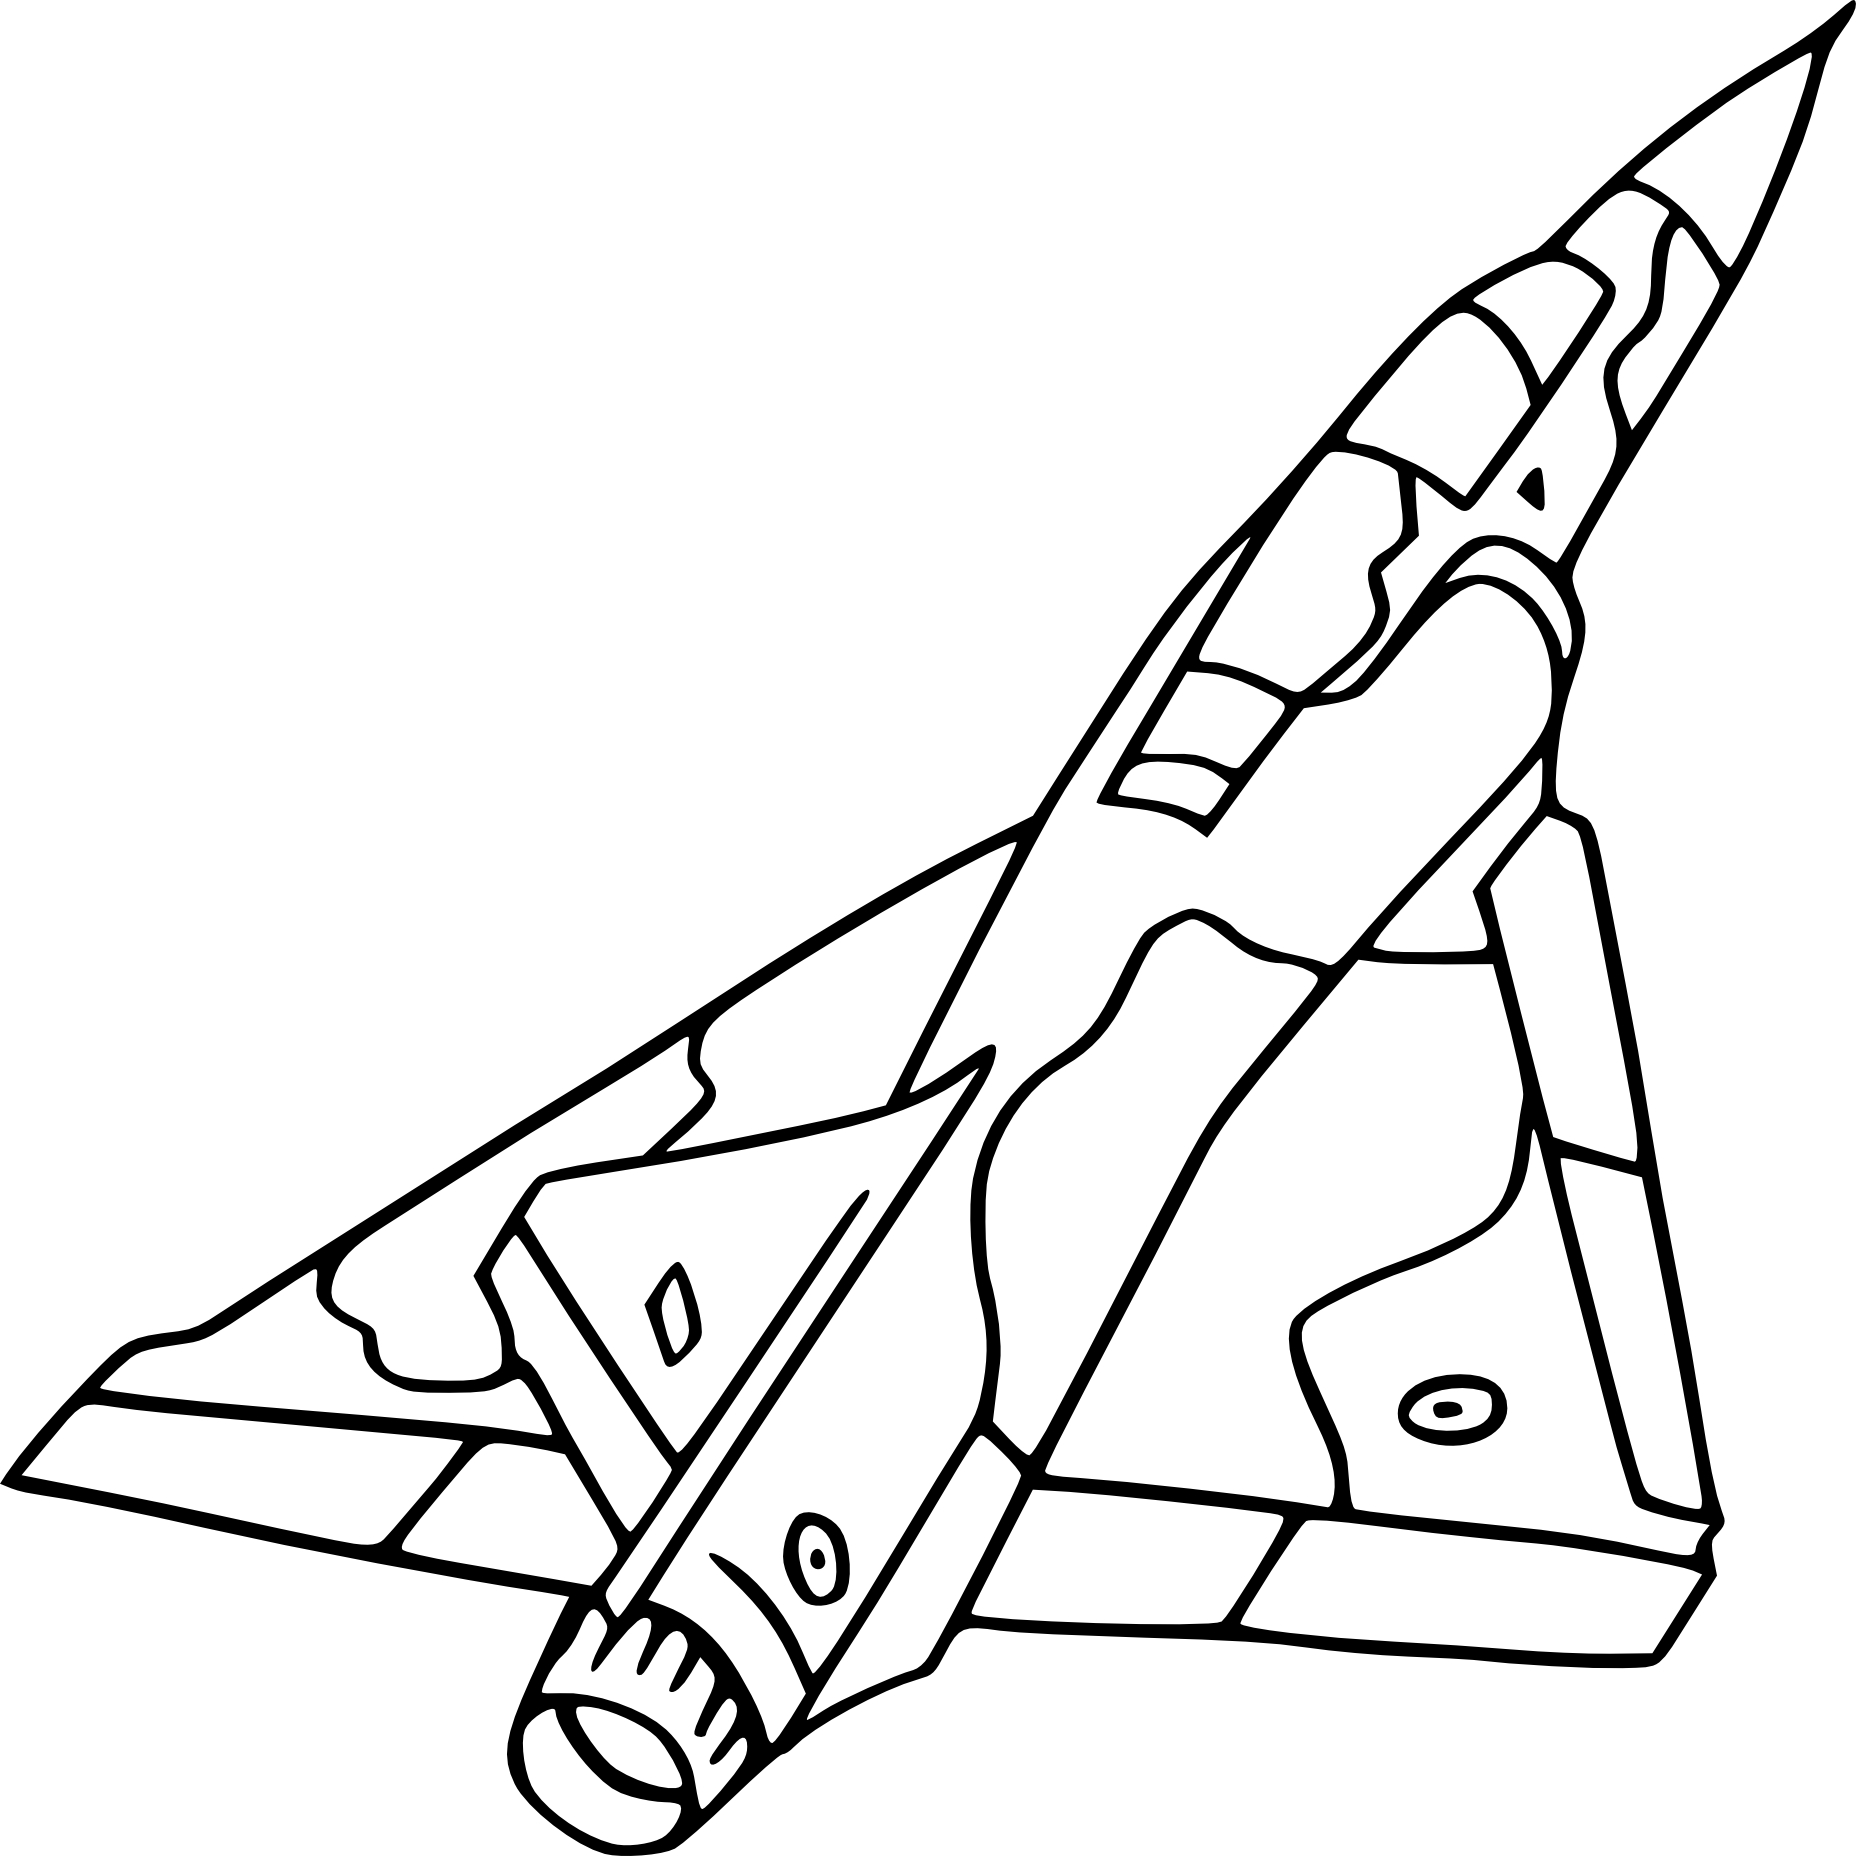 Warplane coloring page